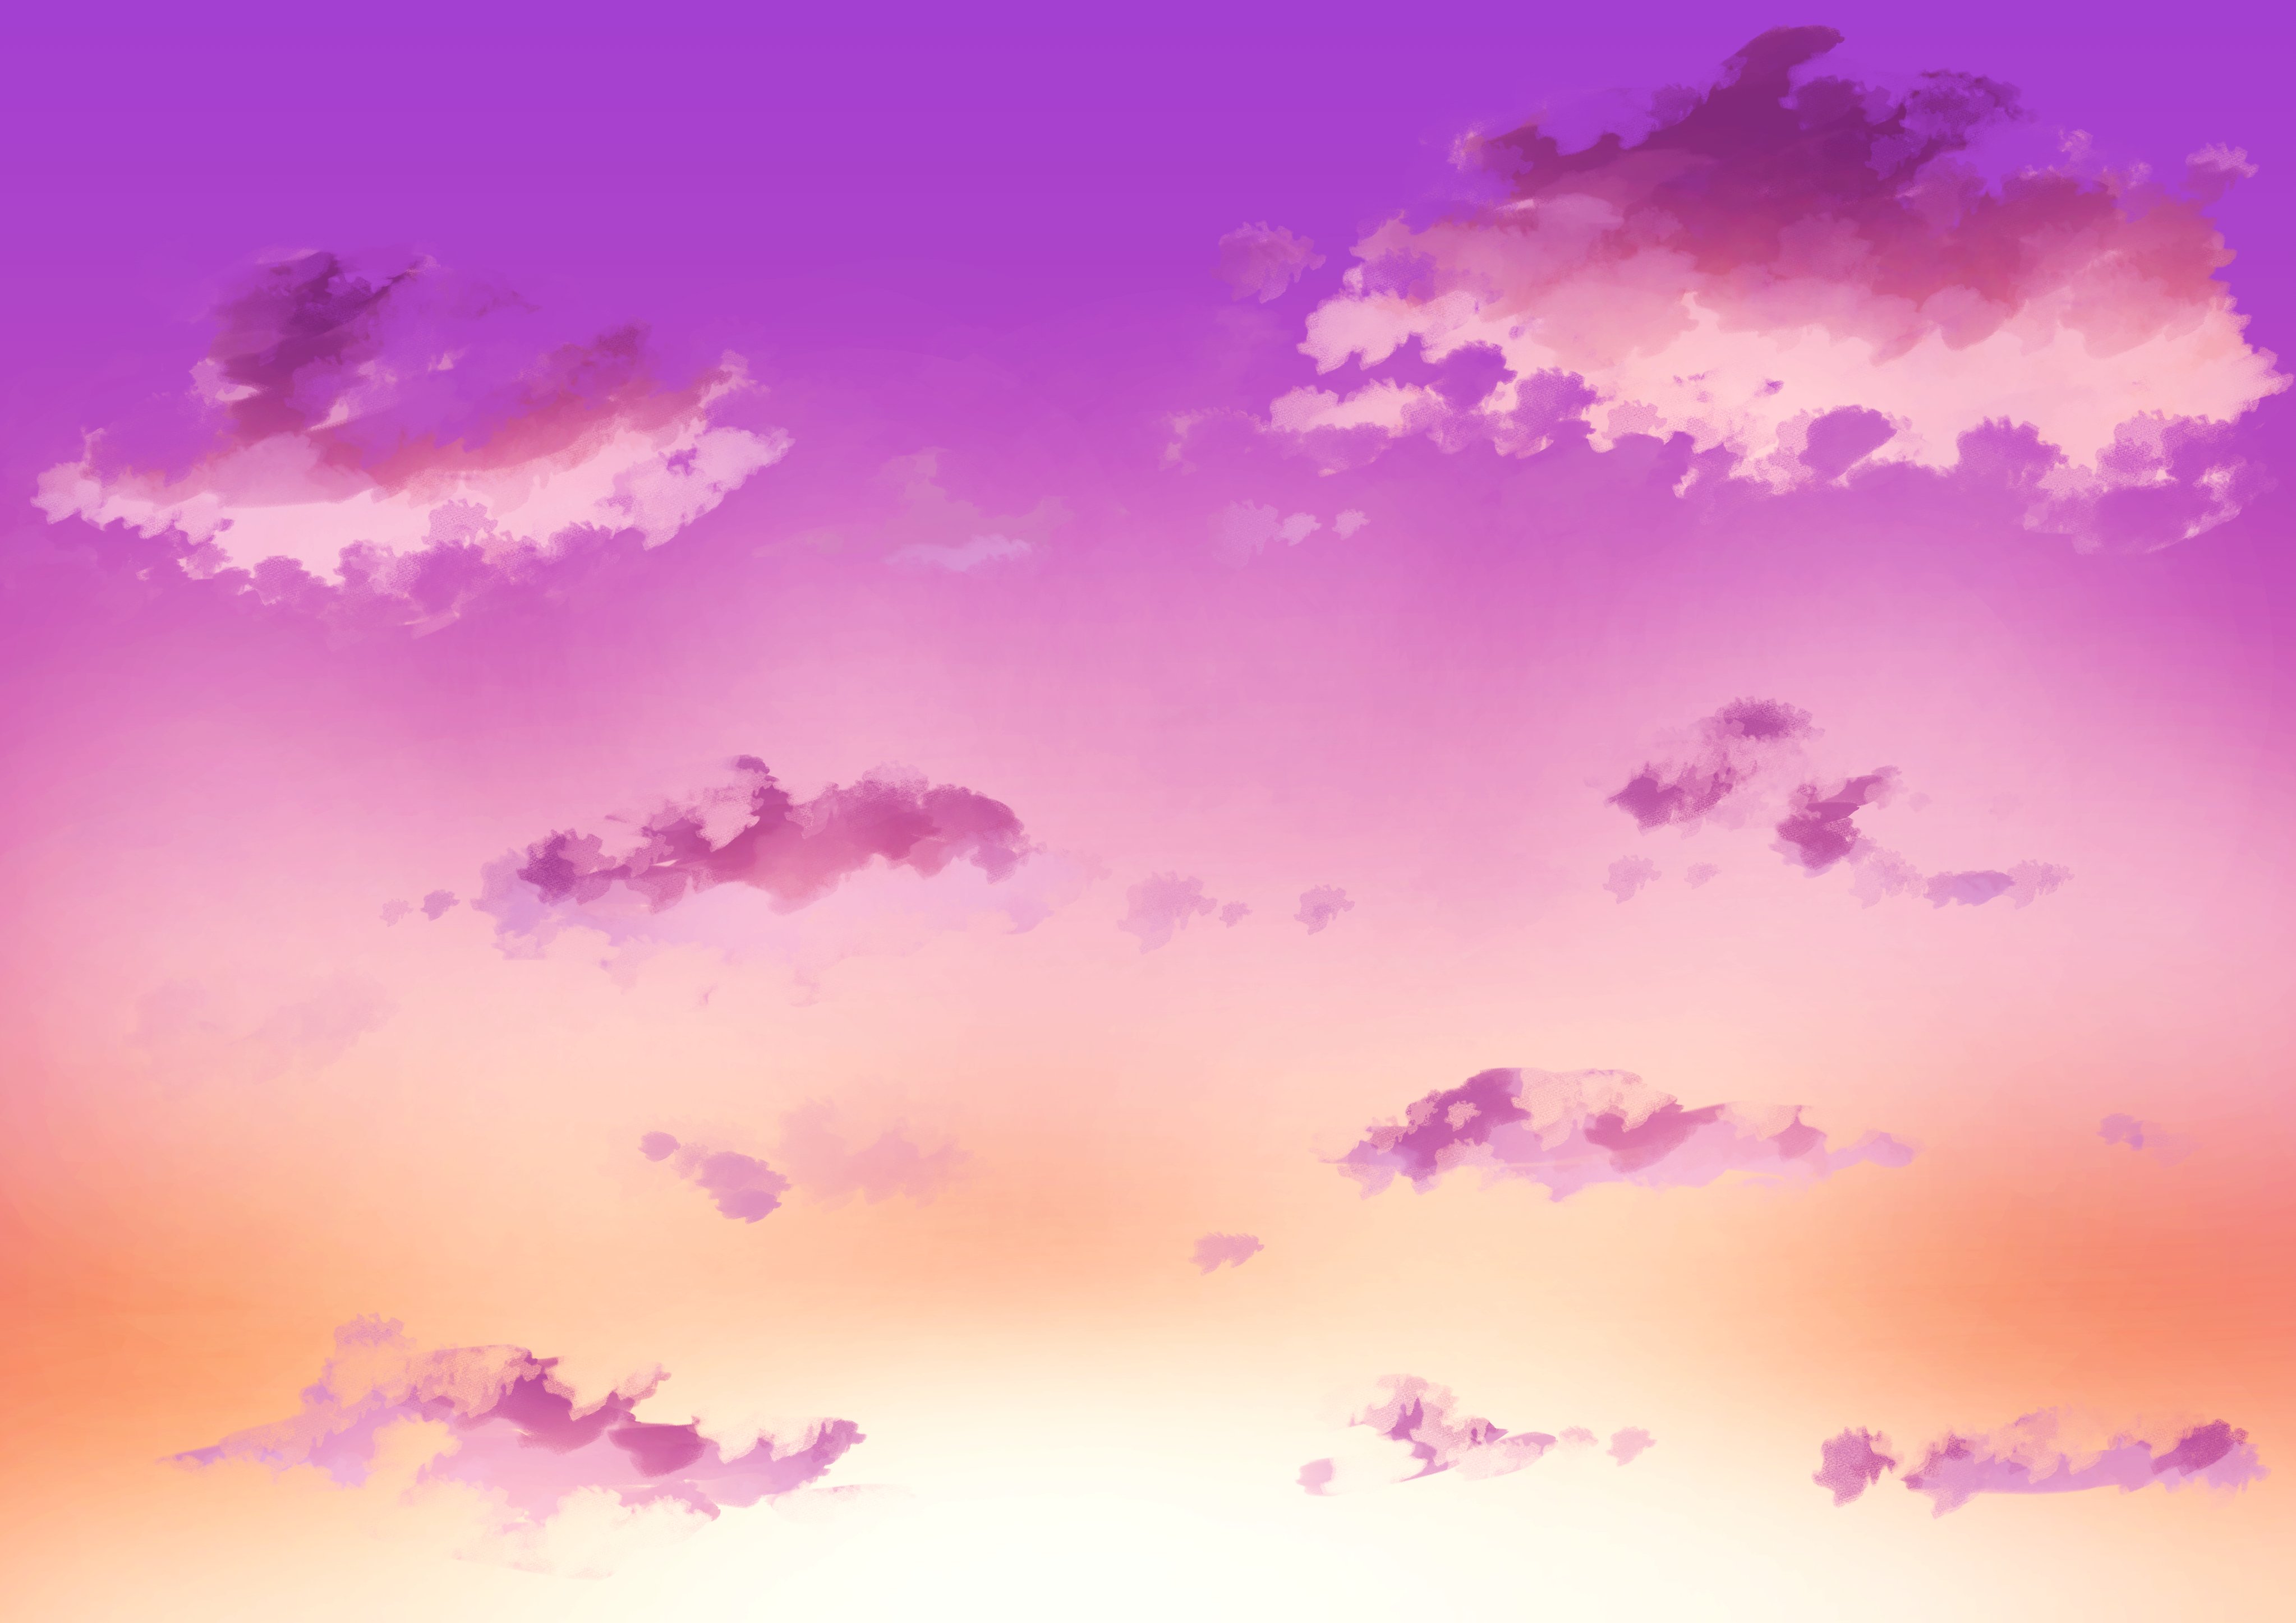 マオ 在 Twitter 上 空のフリー背景セットを描きました 空 イラスト フリー素材 夜空 入道雲 オリジナル Illustration 月 雲 T Co Luvwwroygl Twitter